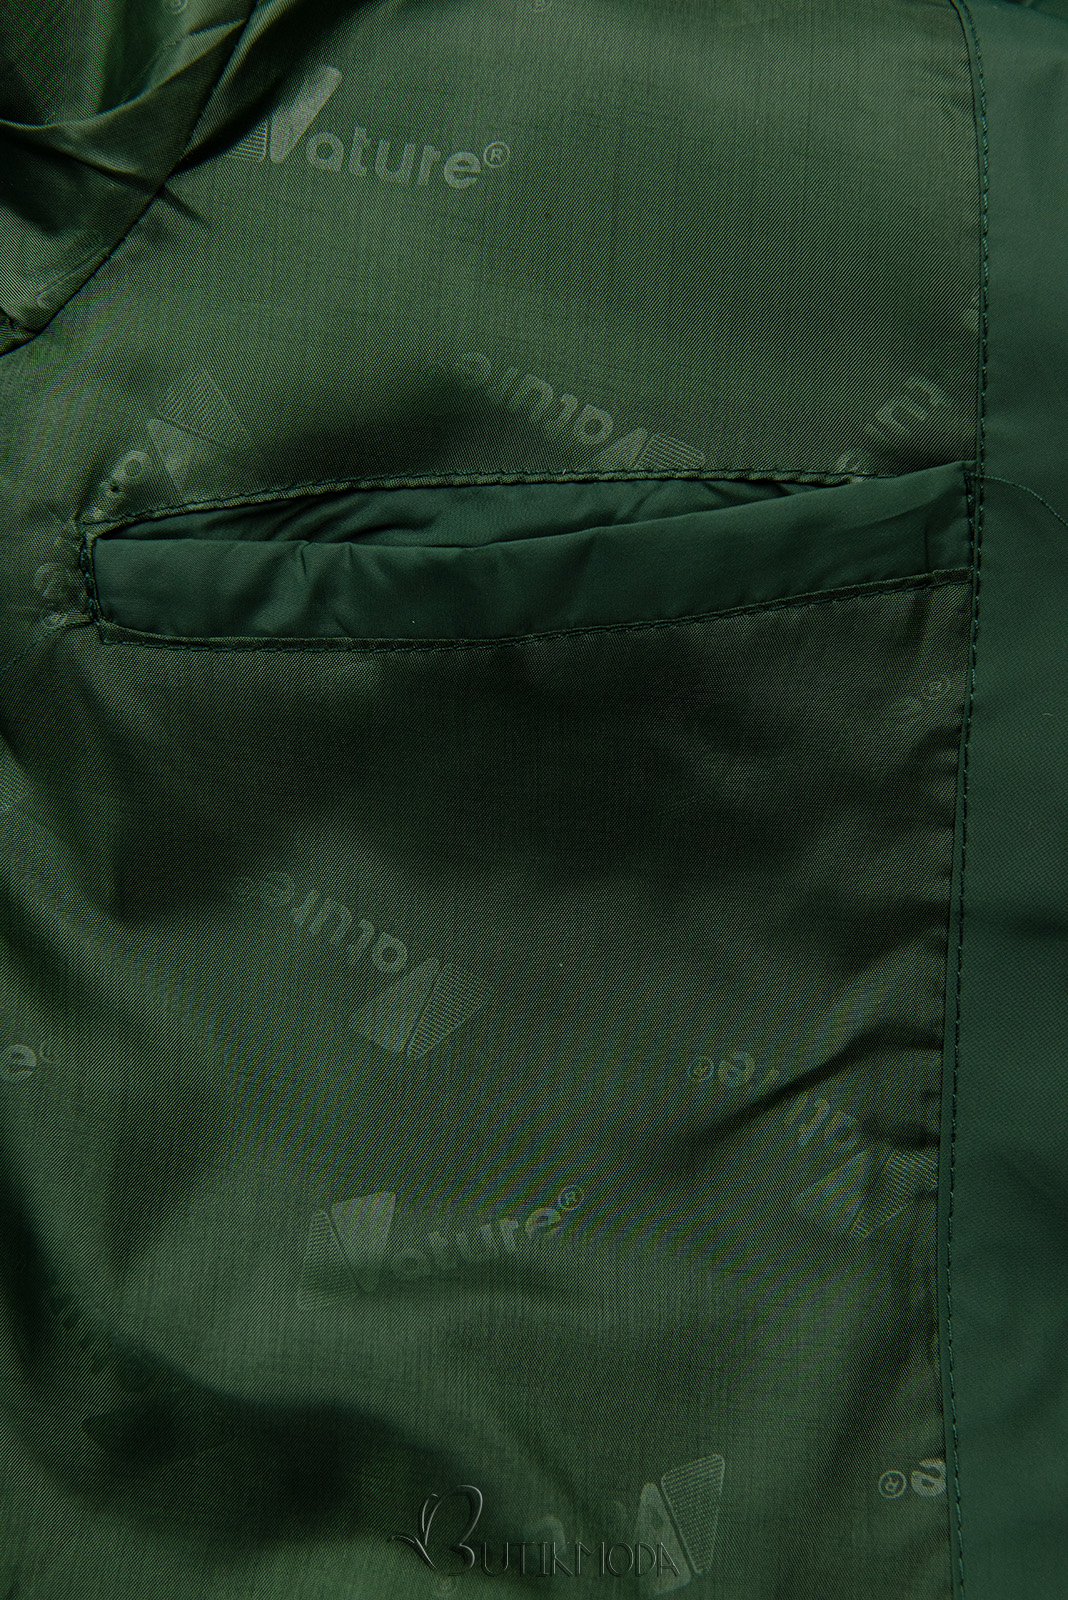 Átmeneti dzseki hosszított fazonban - zöld színű